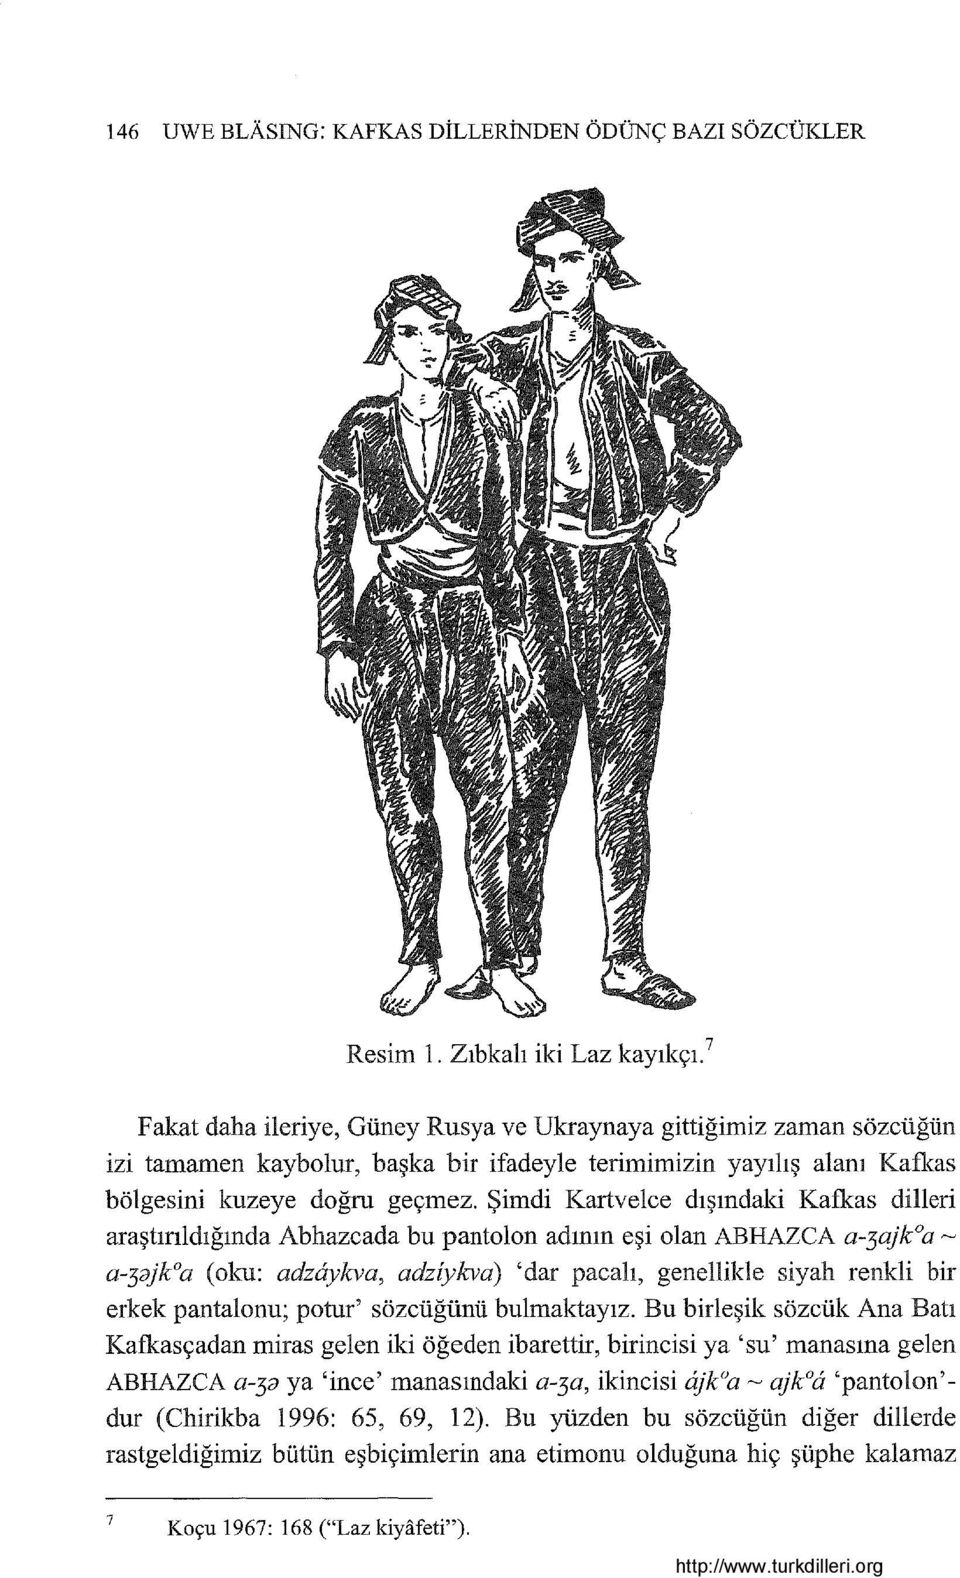 artvelce dışındaki Kafkas dilleri araştırıldığında Abhazcada bu pantolon adının eşi olan ABHAZCA a-3ajkoa '"-' a-3ajkoa (oku: adz6ykva, adziykva) 'dar pacalı, genellilde siyah renkli bir erkek